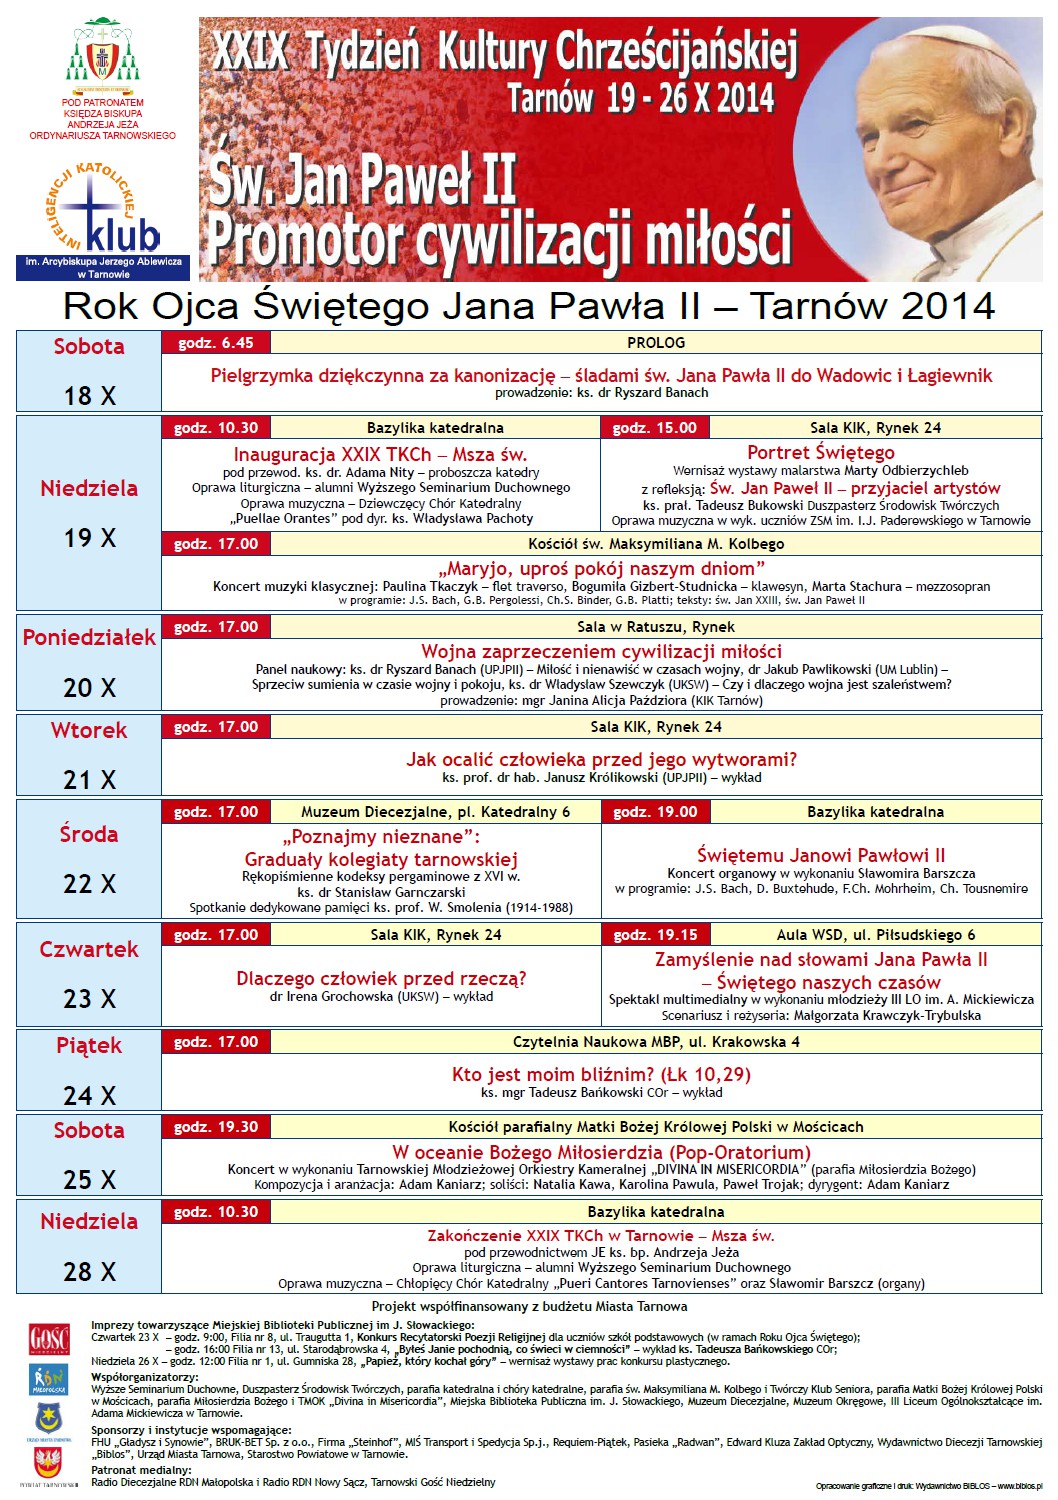 Tydzień Kultury Chrześcijańskiej, Tarnów 2014